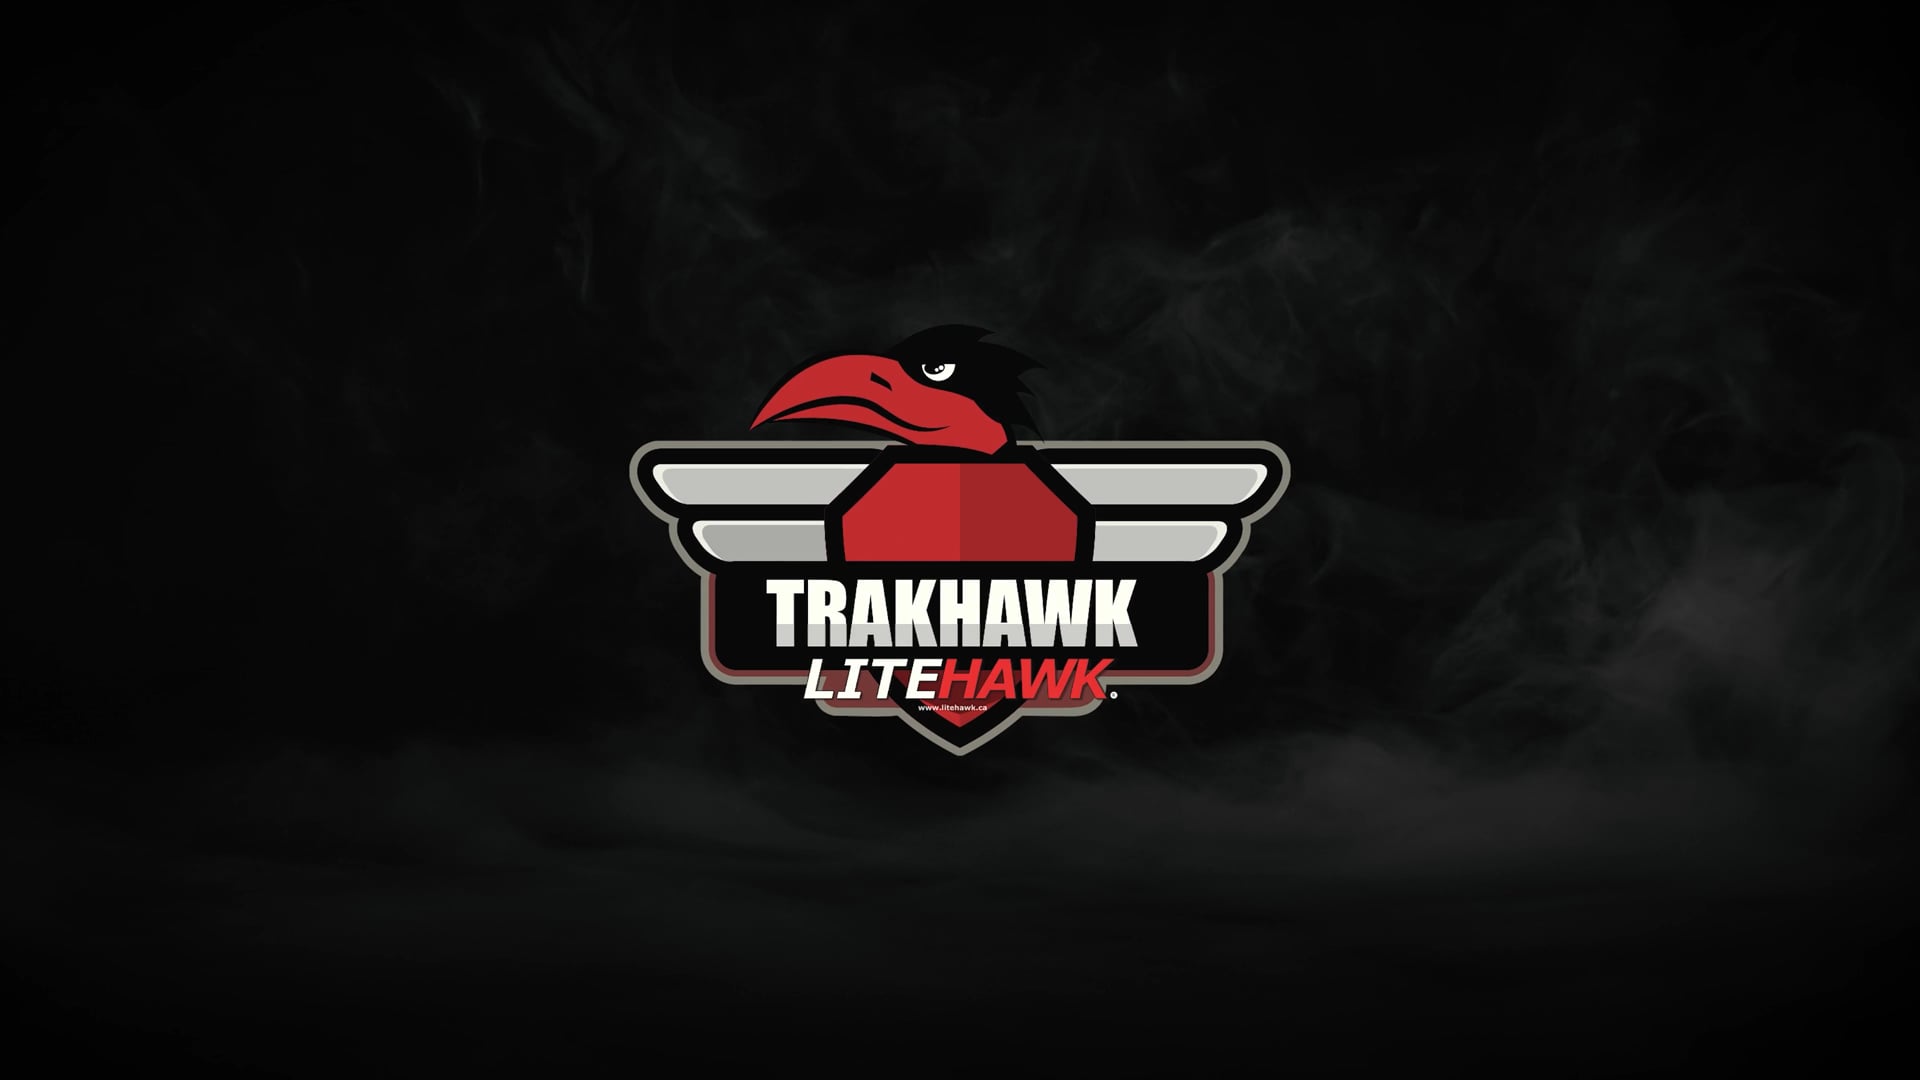 LiteHawk TrakHawk | Premium Tracked Off-Road Vehicle